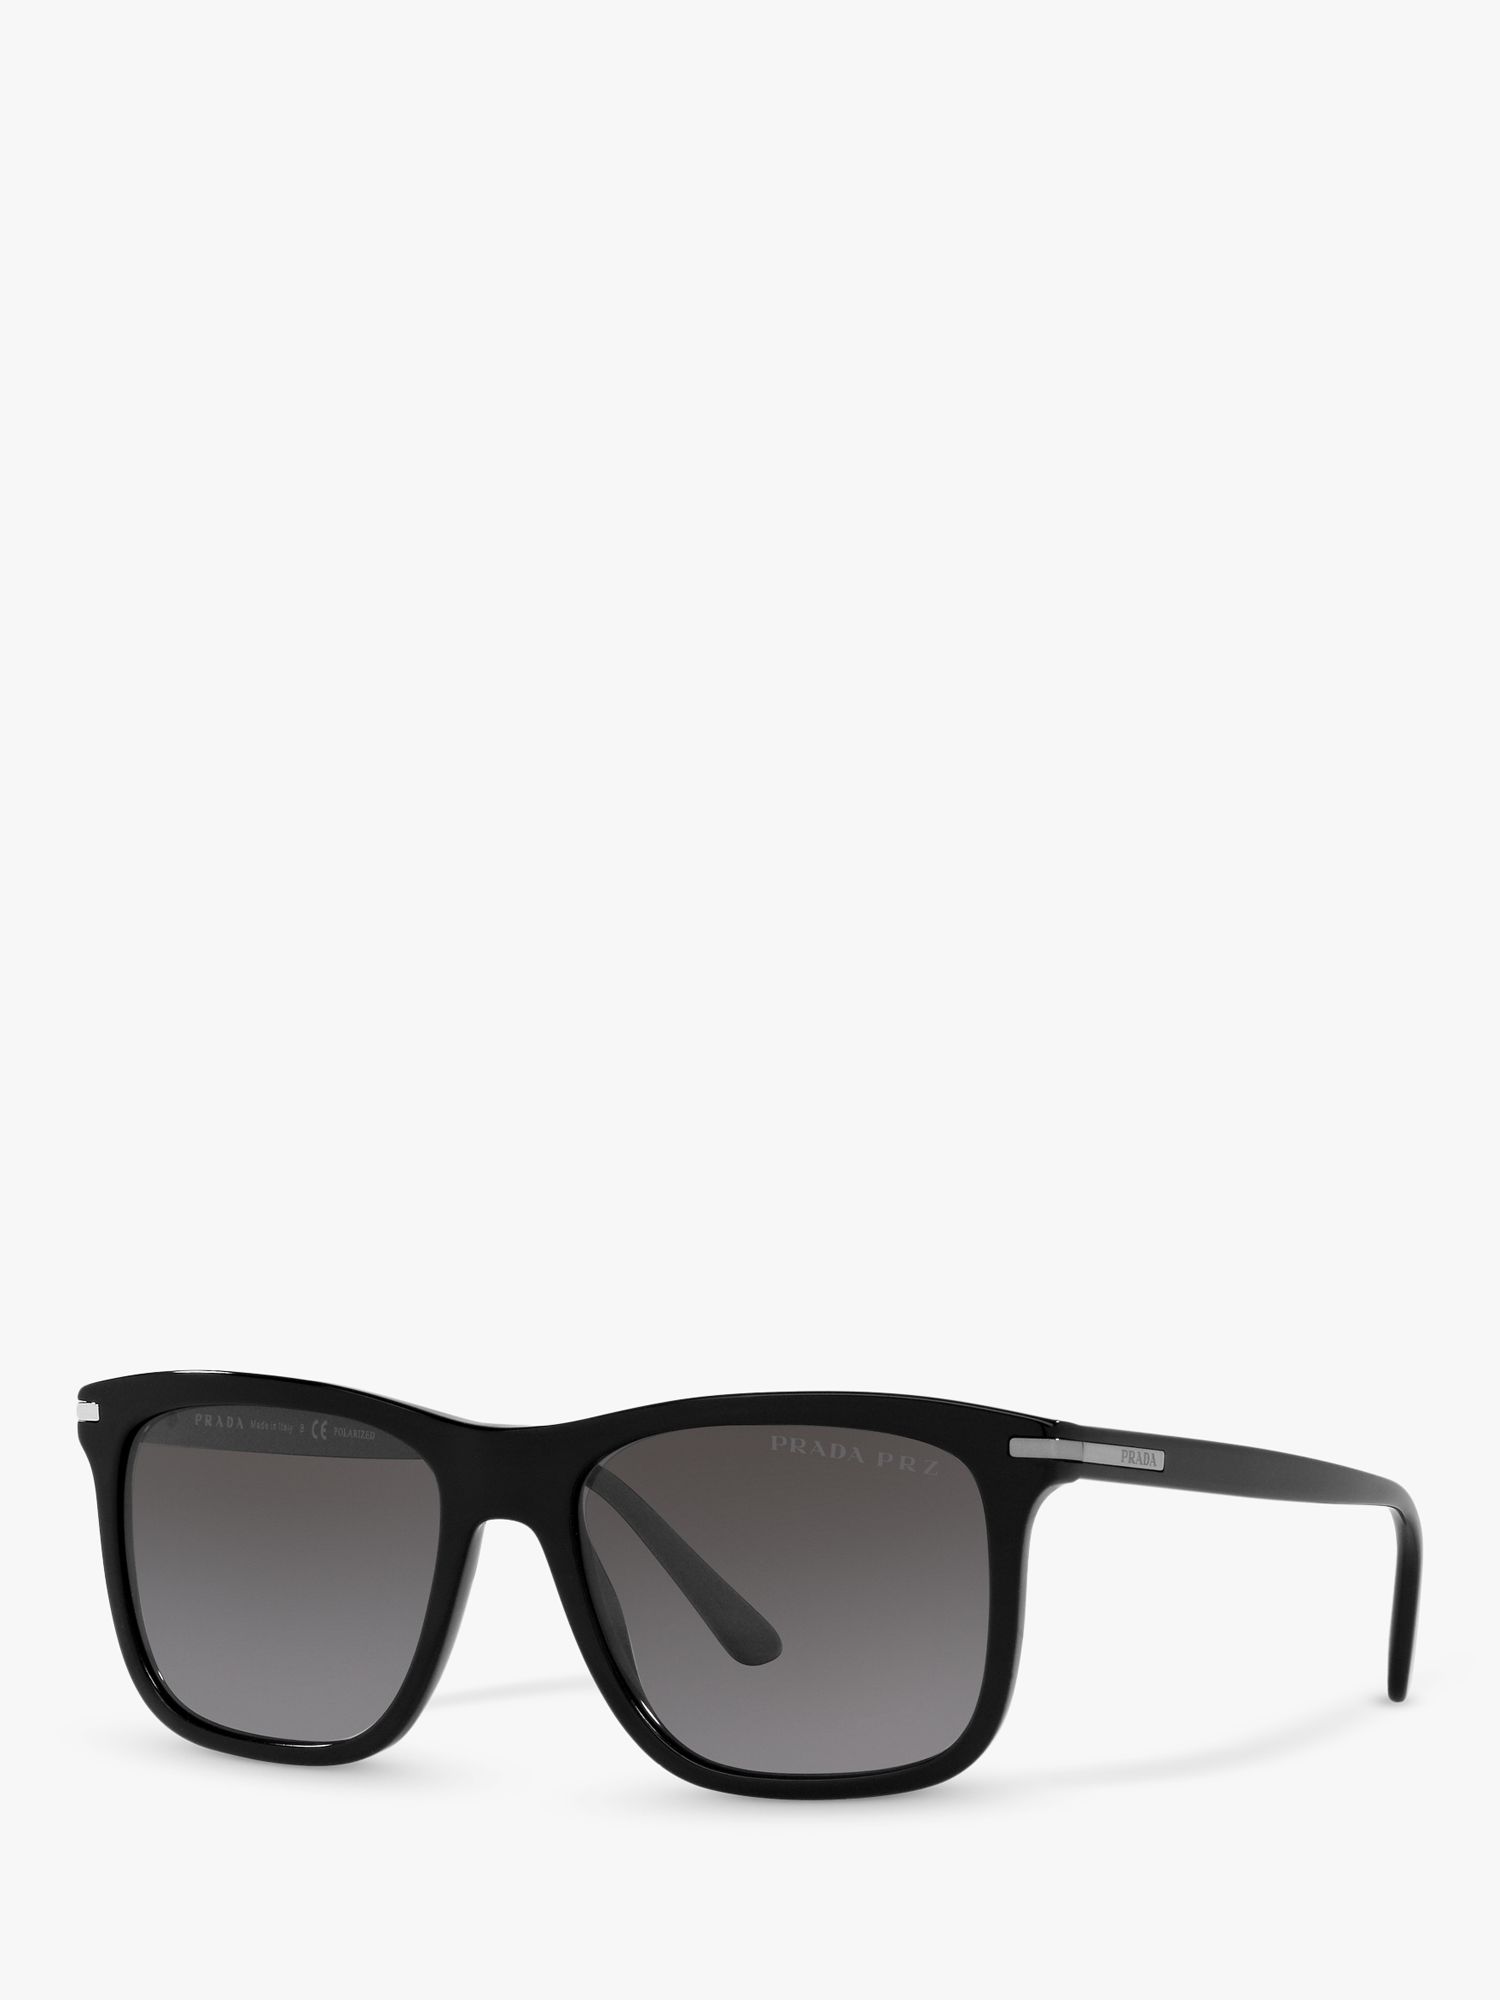 Prada PR 18WS Men's Rectangular Polarised Sunglasses, Black/Grey